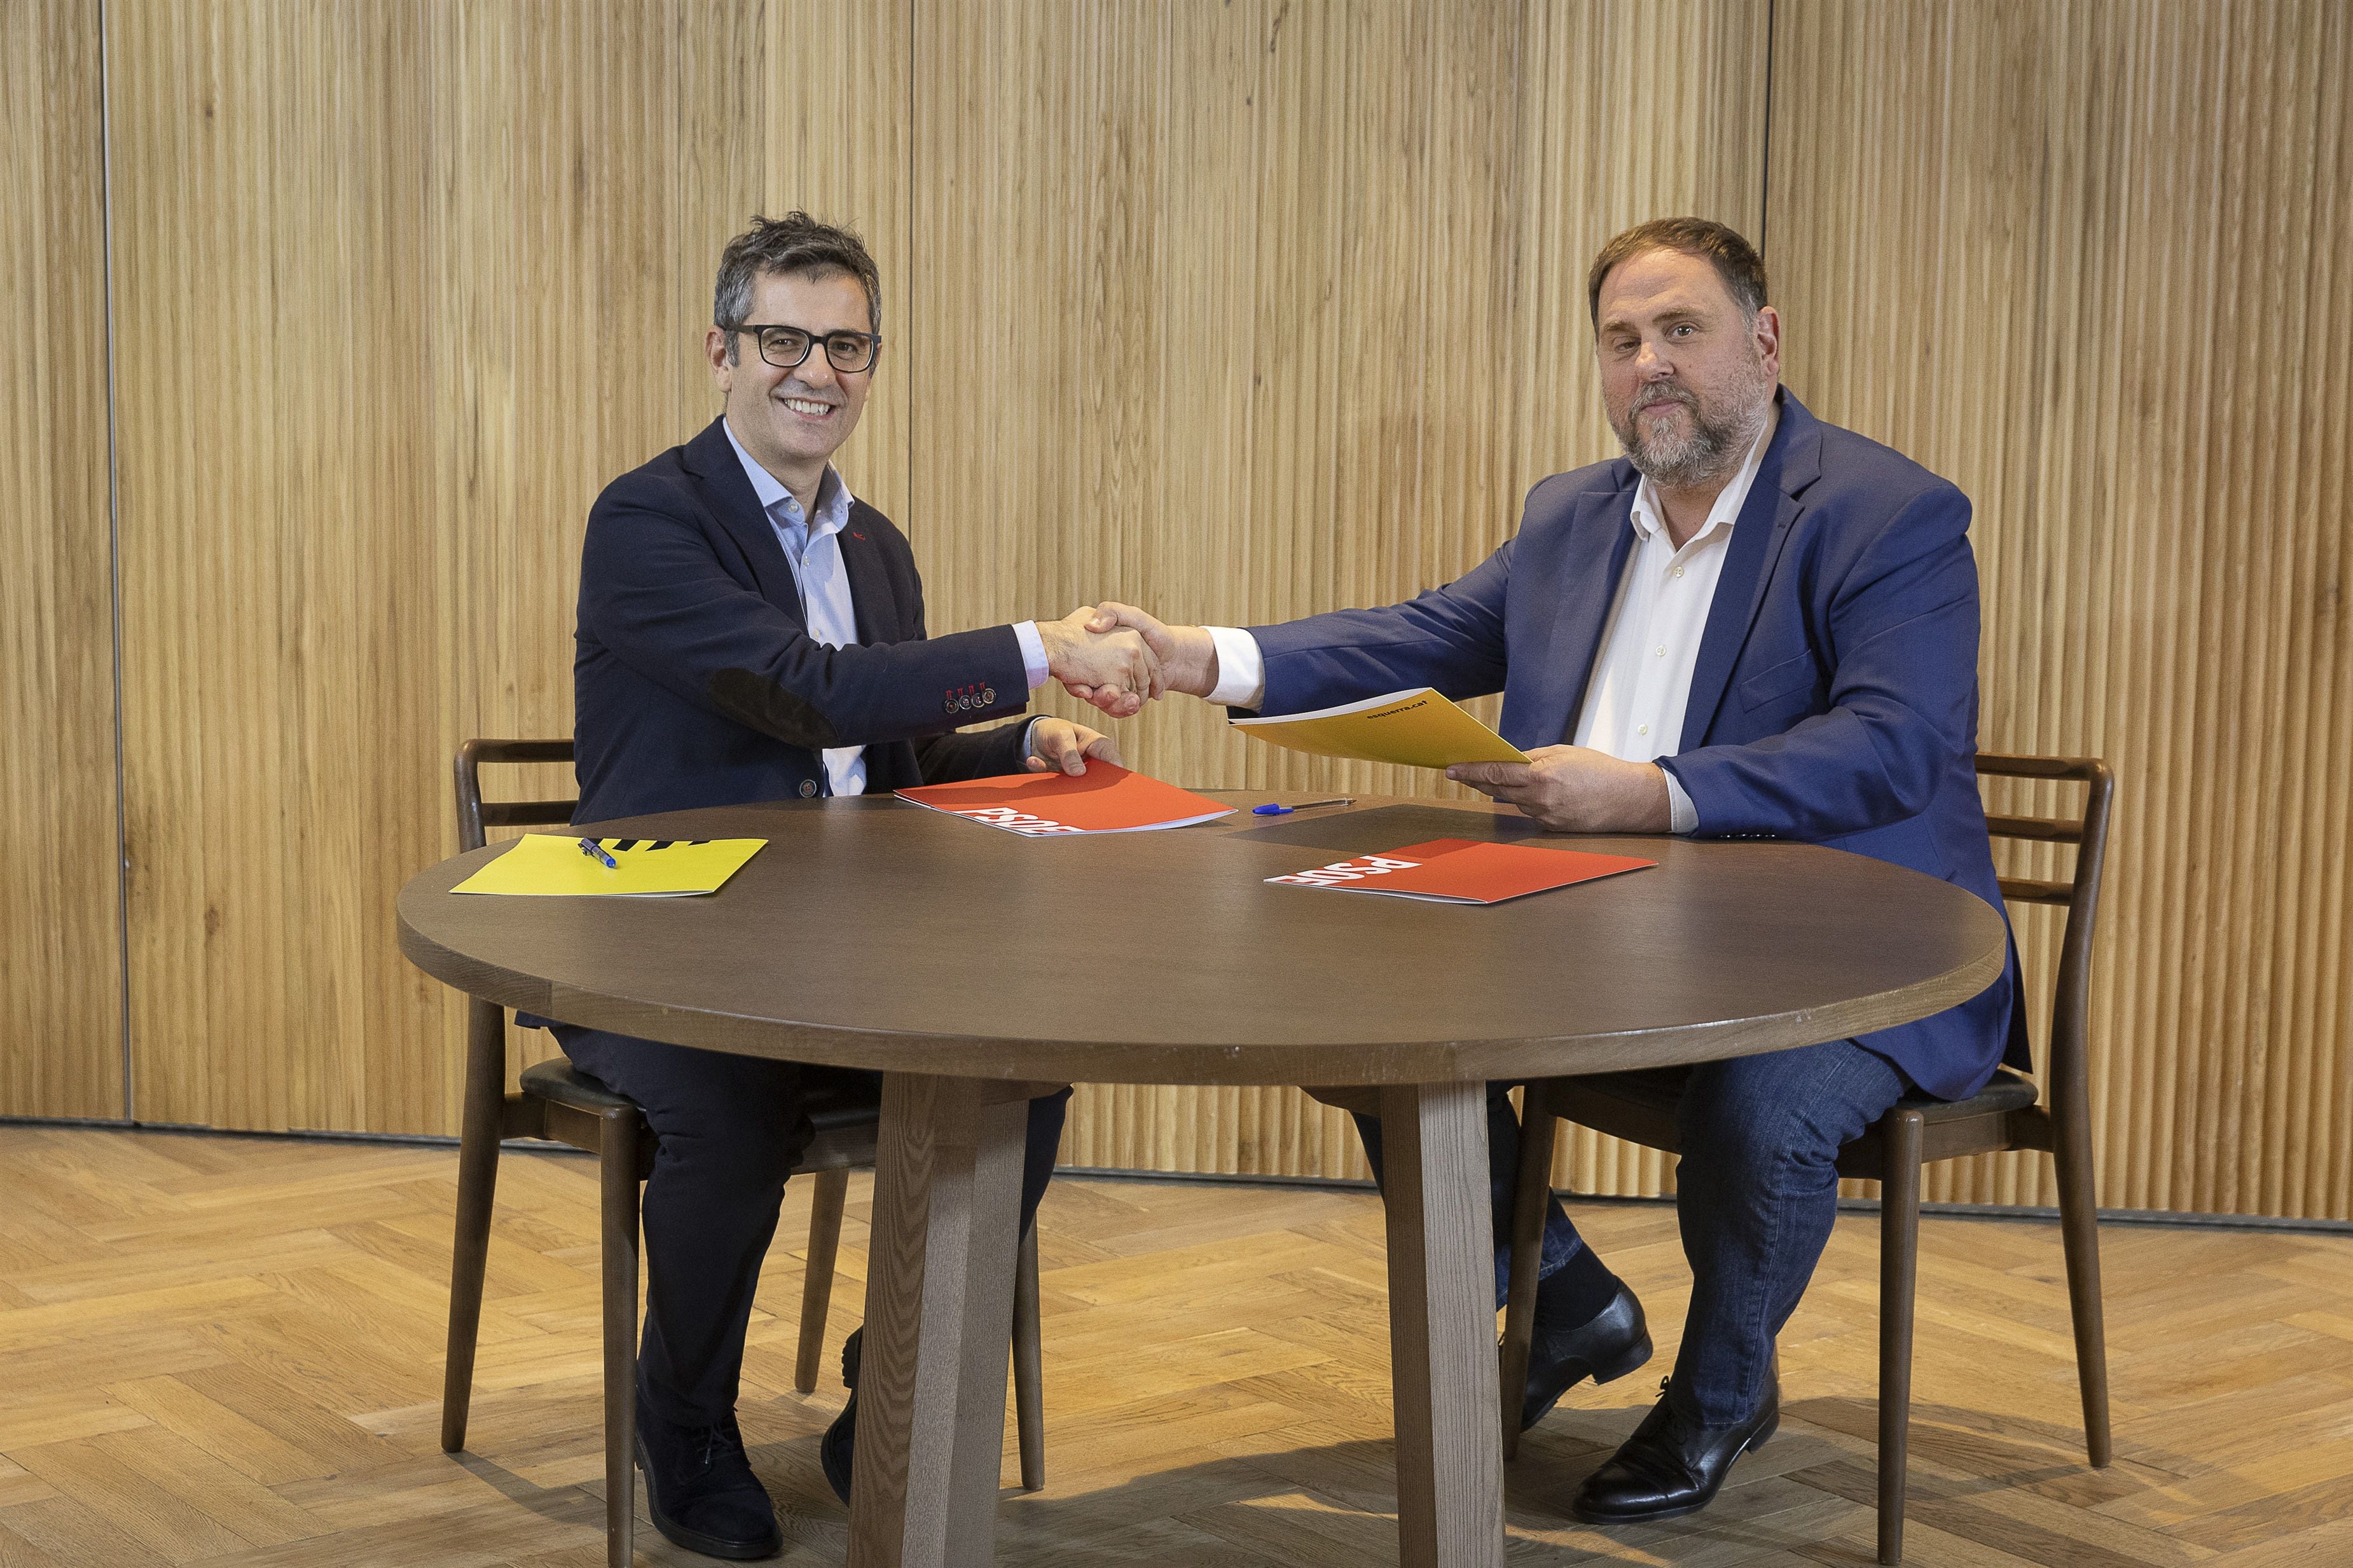 Firma del acuerdo de investidura entre el ministro de Presidencia en funciones y miembro de la comisión negociadora del PSOE, Félix Bolaños y el presidente de ERC, Oriol Junqueras
JORDI PLAY
02/11/2023